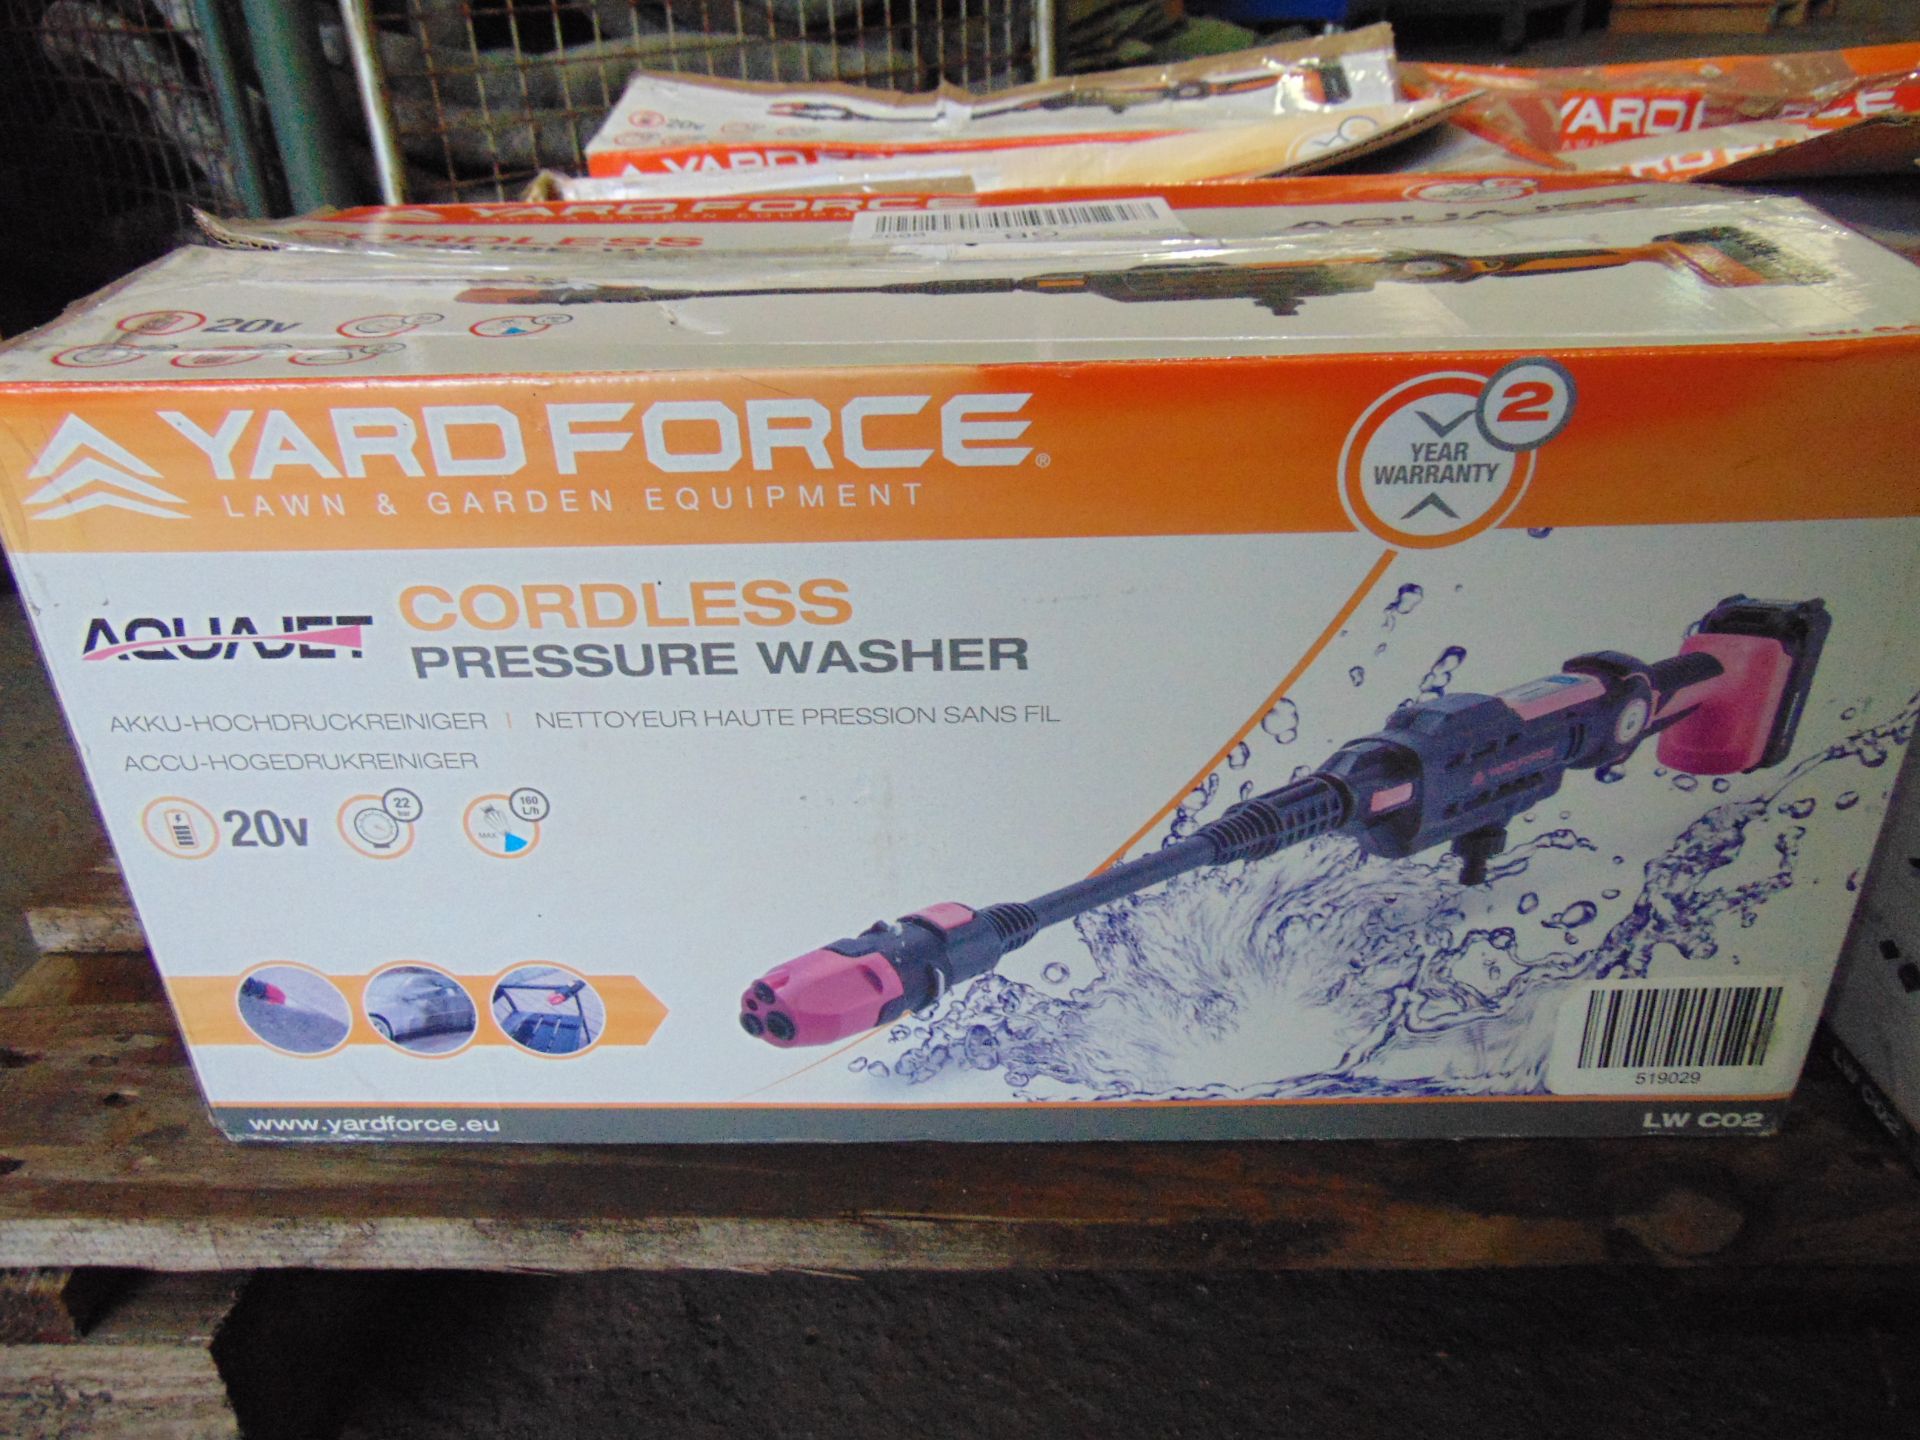 6 x Cordless Pressure Washers as shown - Bild 2 aus 5